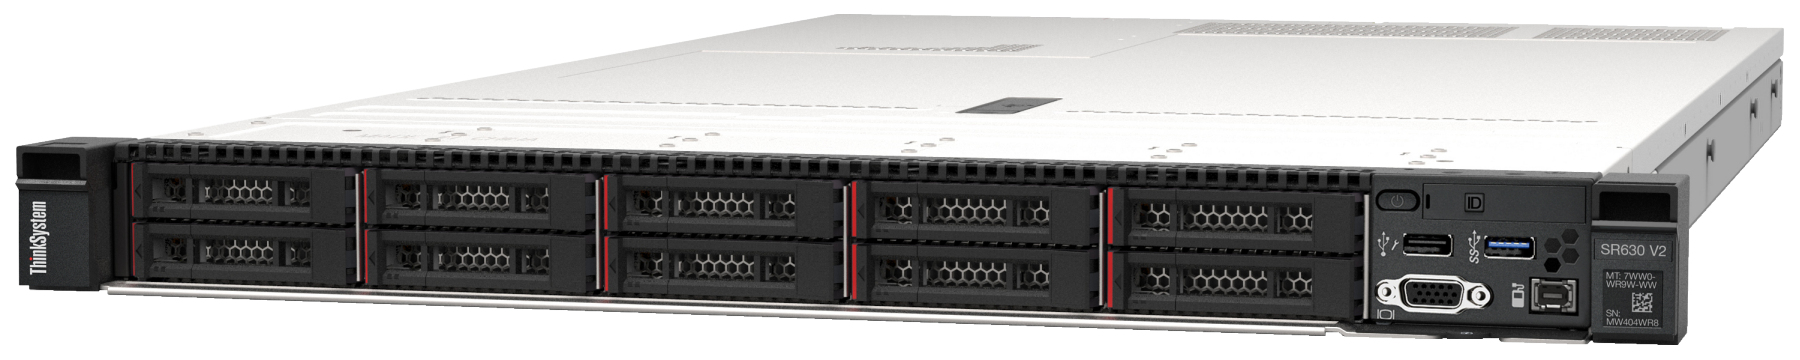 Сервер Lenovo ThinkSystem SR630 V2 (7Z71A05MEA). Фиксированная комплектация сервера